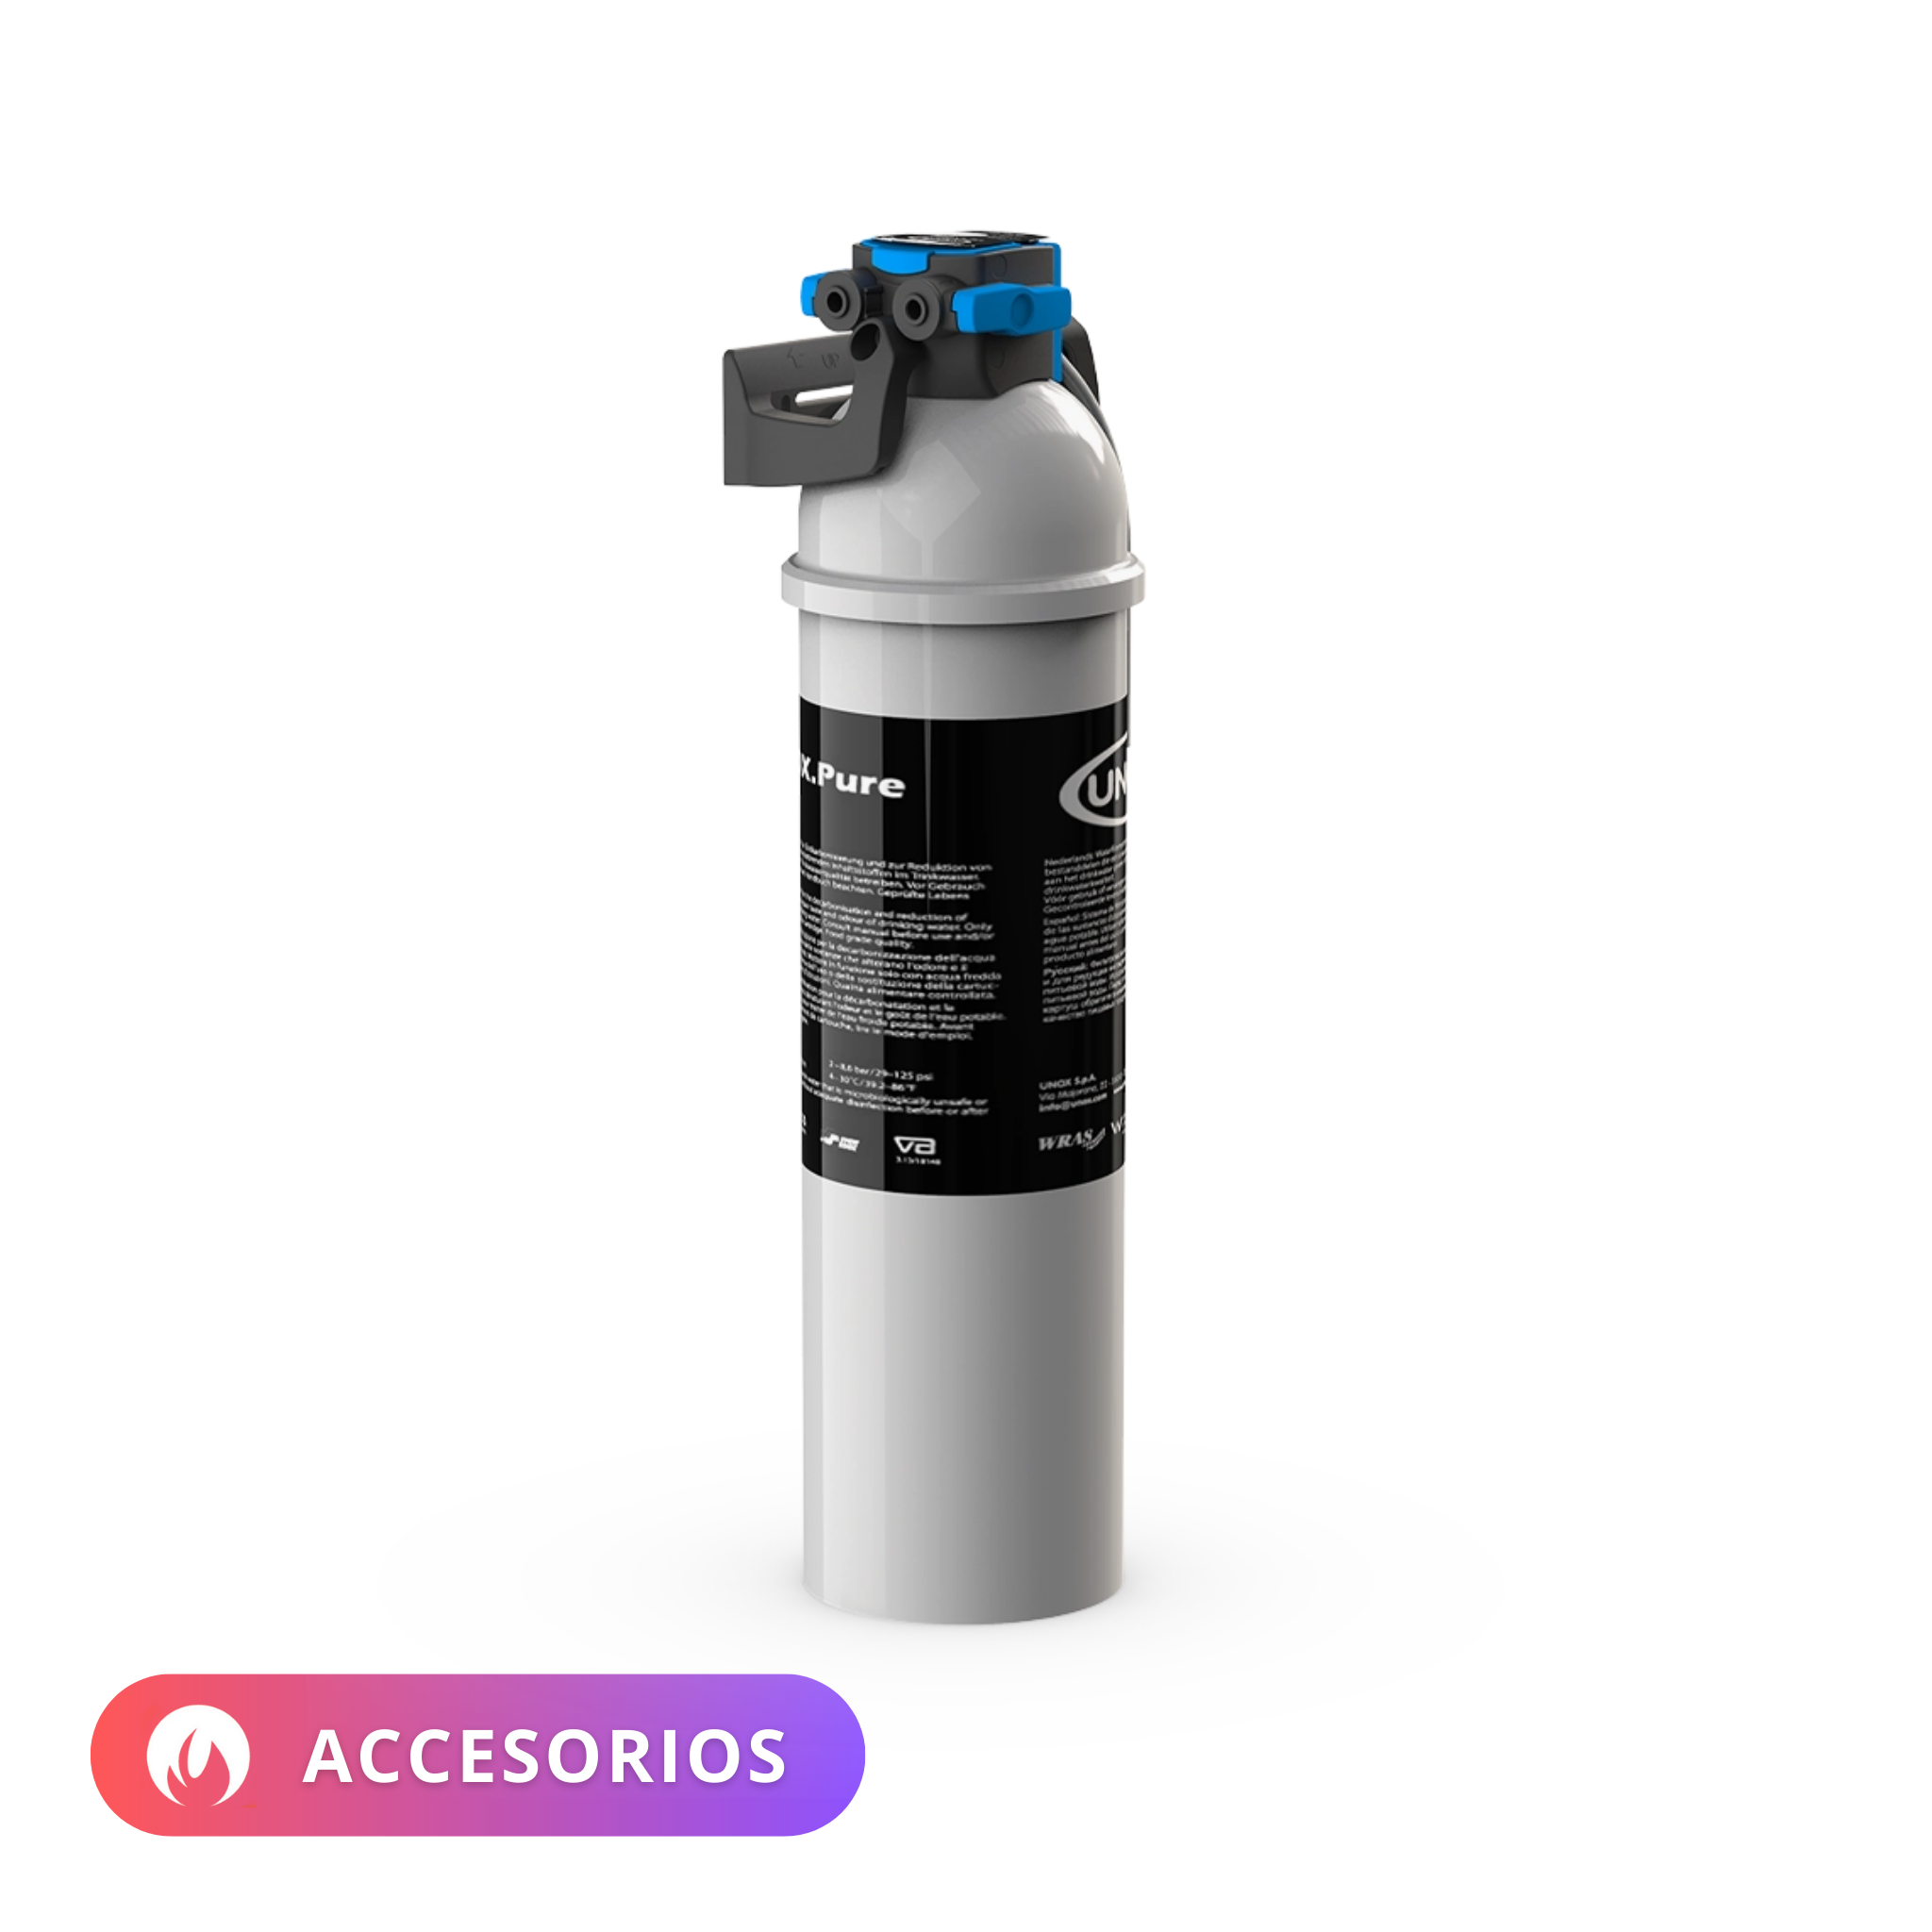 UNOX | Filtro Pure | XHC003 | Accesorio